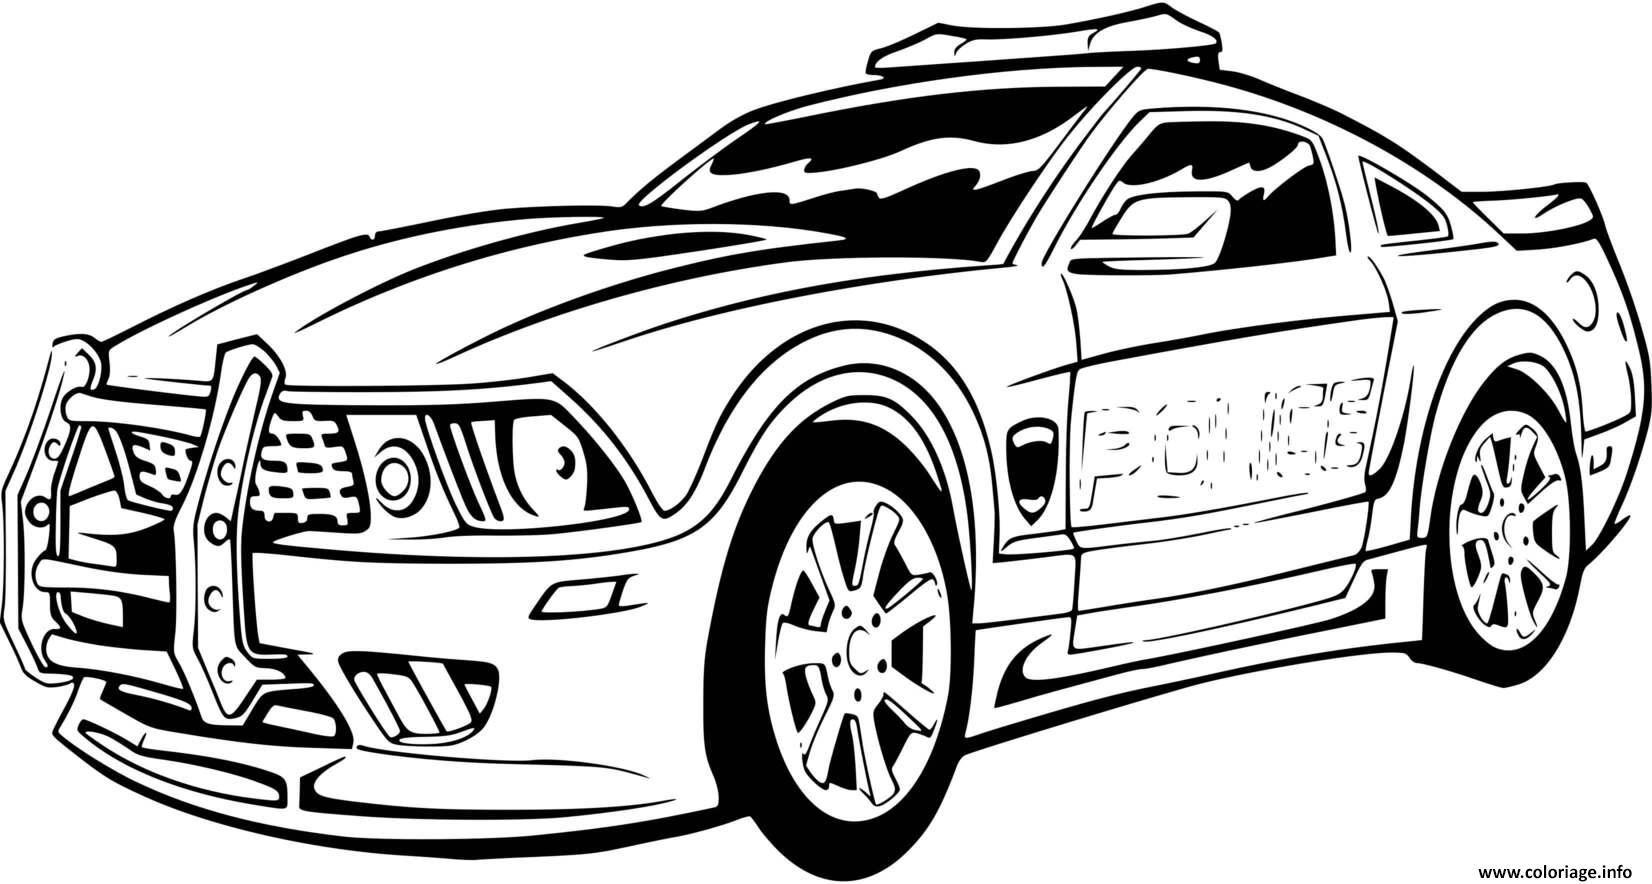 Dessin voiture de police sport mustang ford Coloriage Gratuit à Imprimer